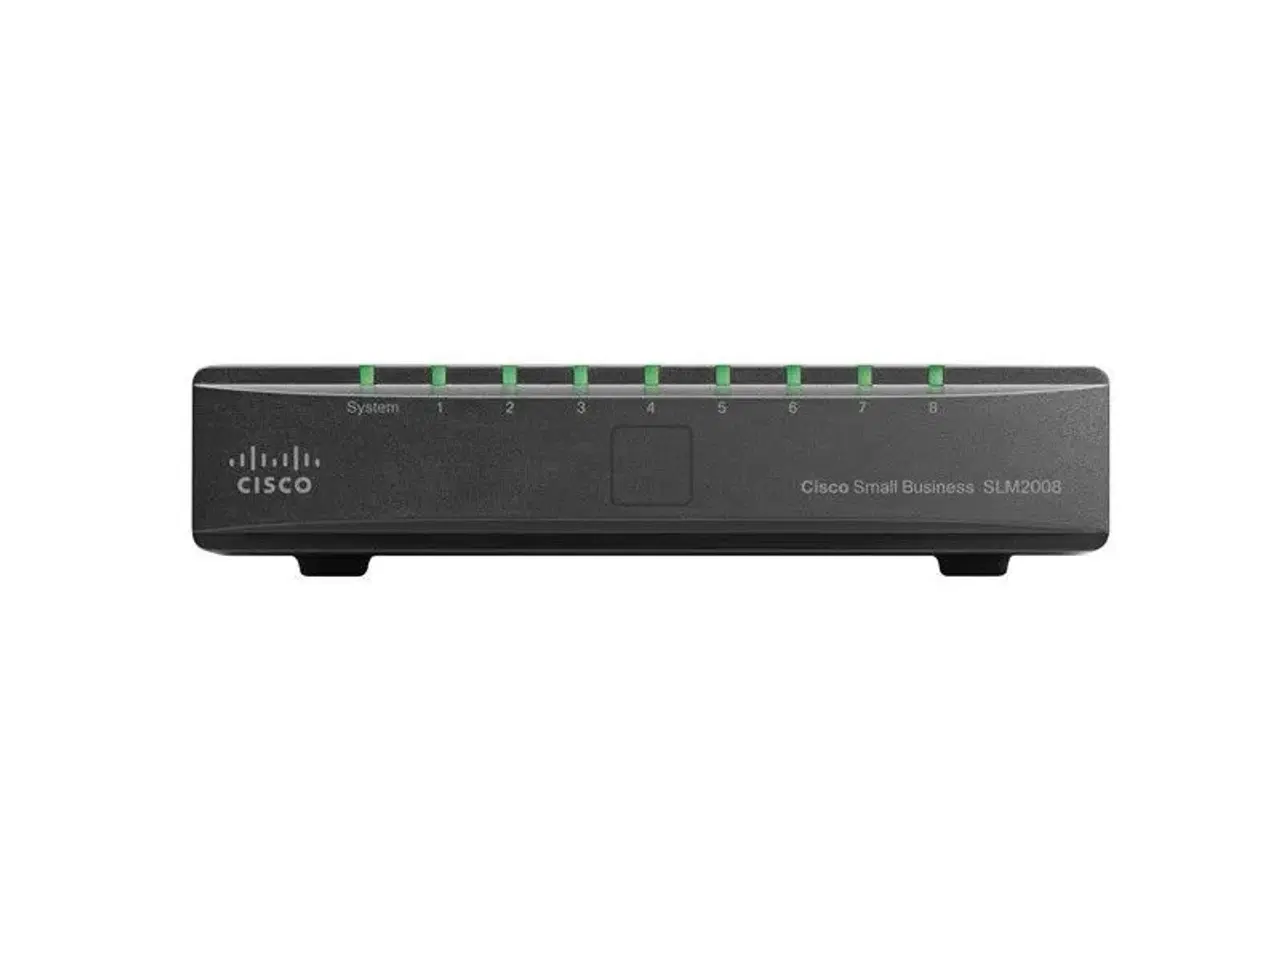 Billede 1 - Cisco SG200-8 switch